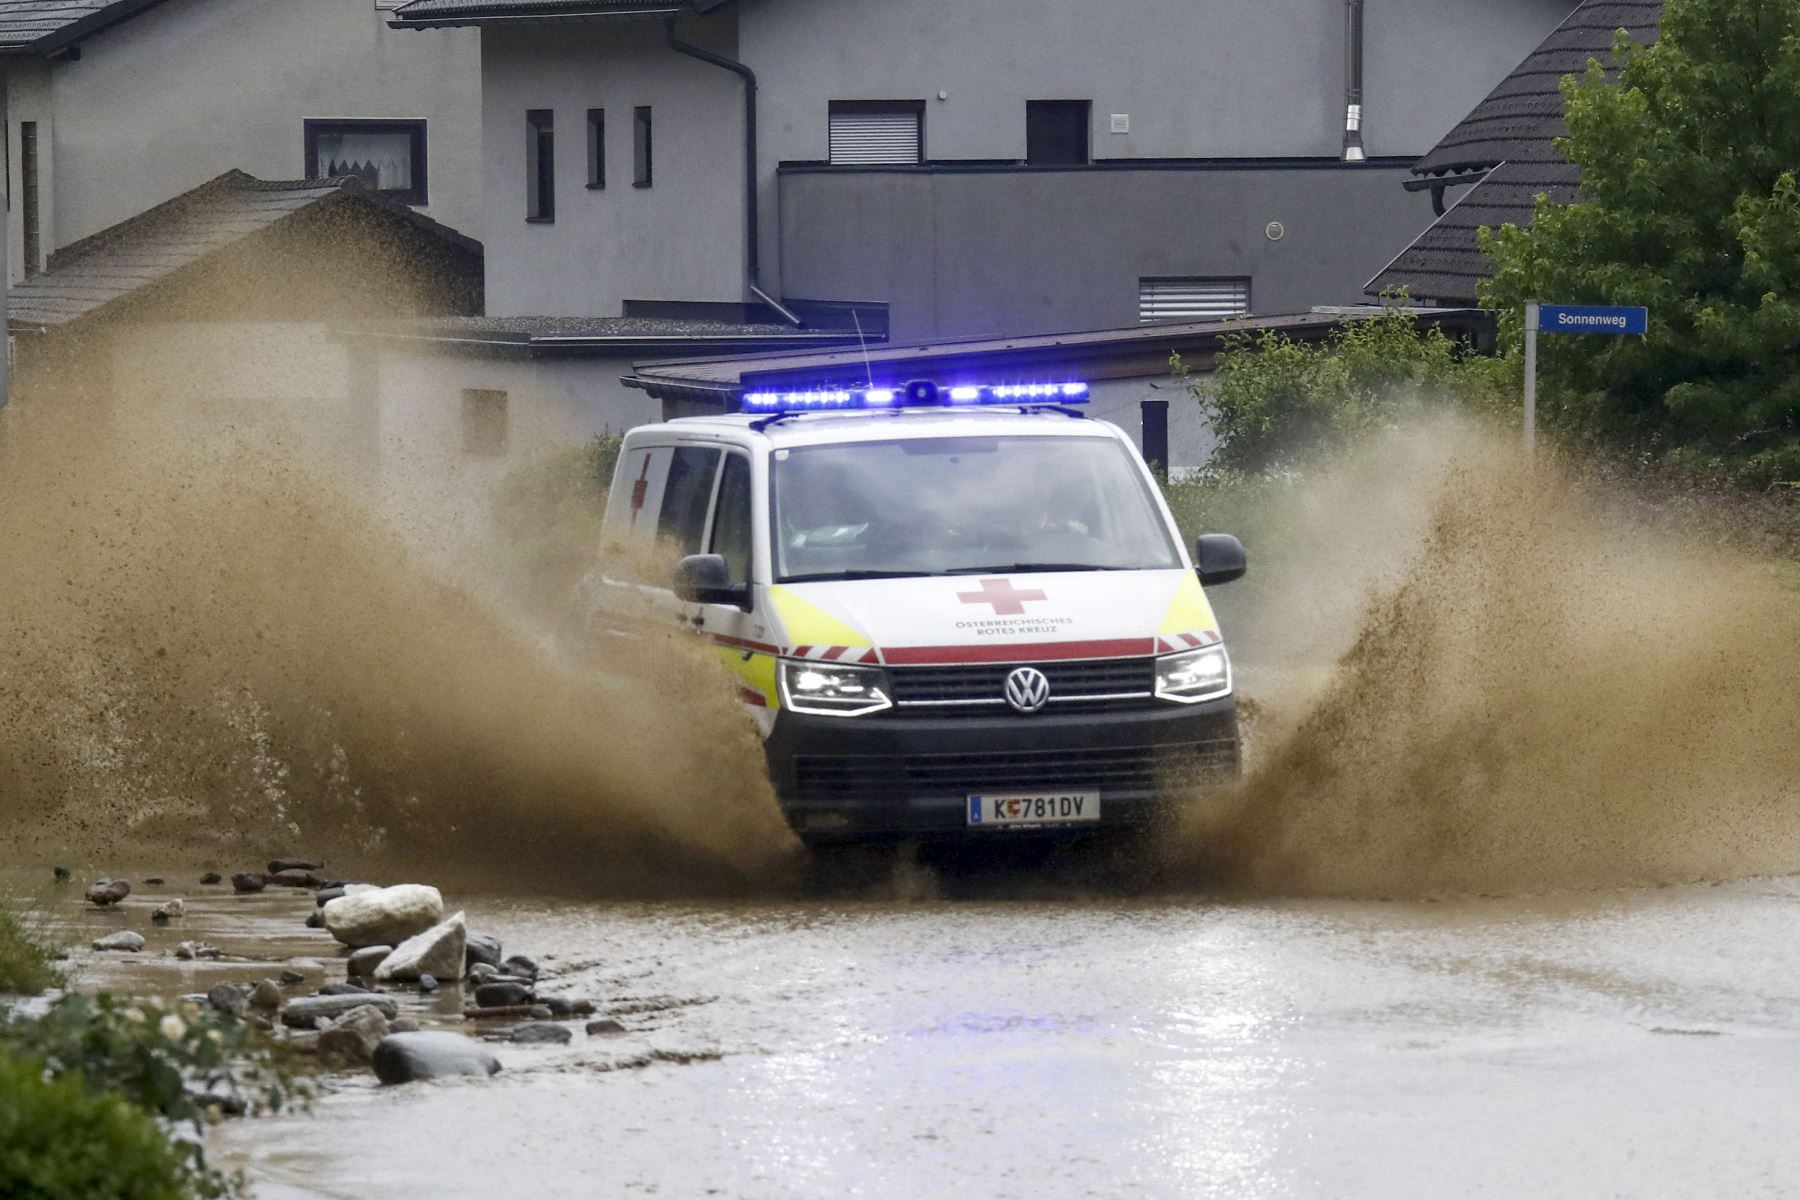 Una camioneta de la cruz roja salpica agua a los costados mientras conduce por una carretera inundada en Treffen, en el distrito de Villach-Land del estado de Carintia, Austria, el 29 de junio de 2022. Foto: AFP